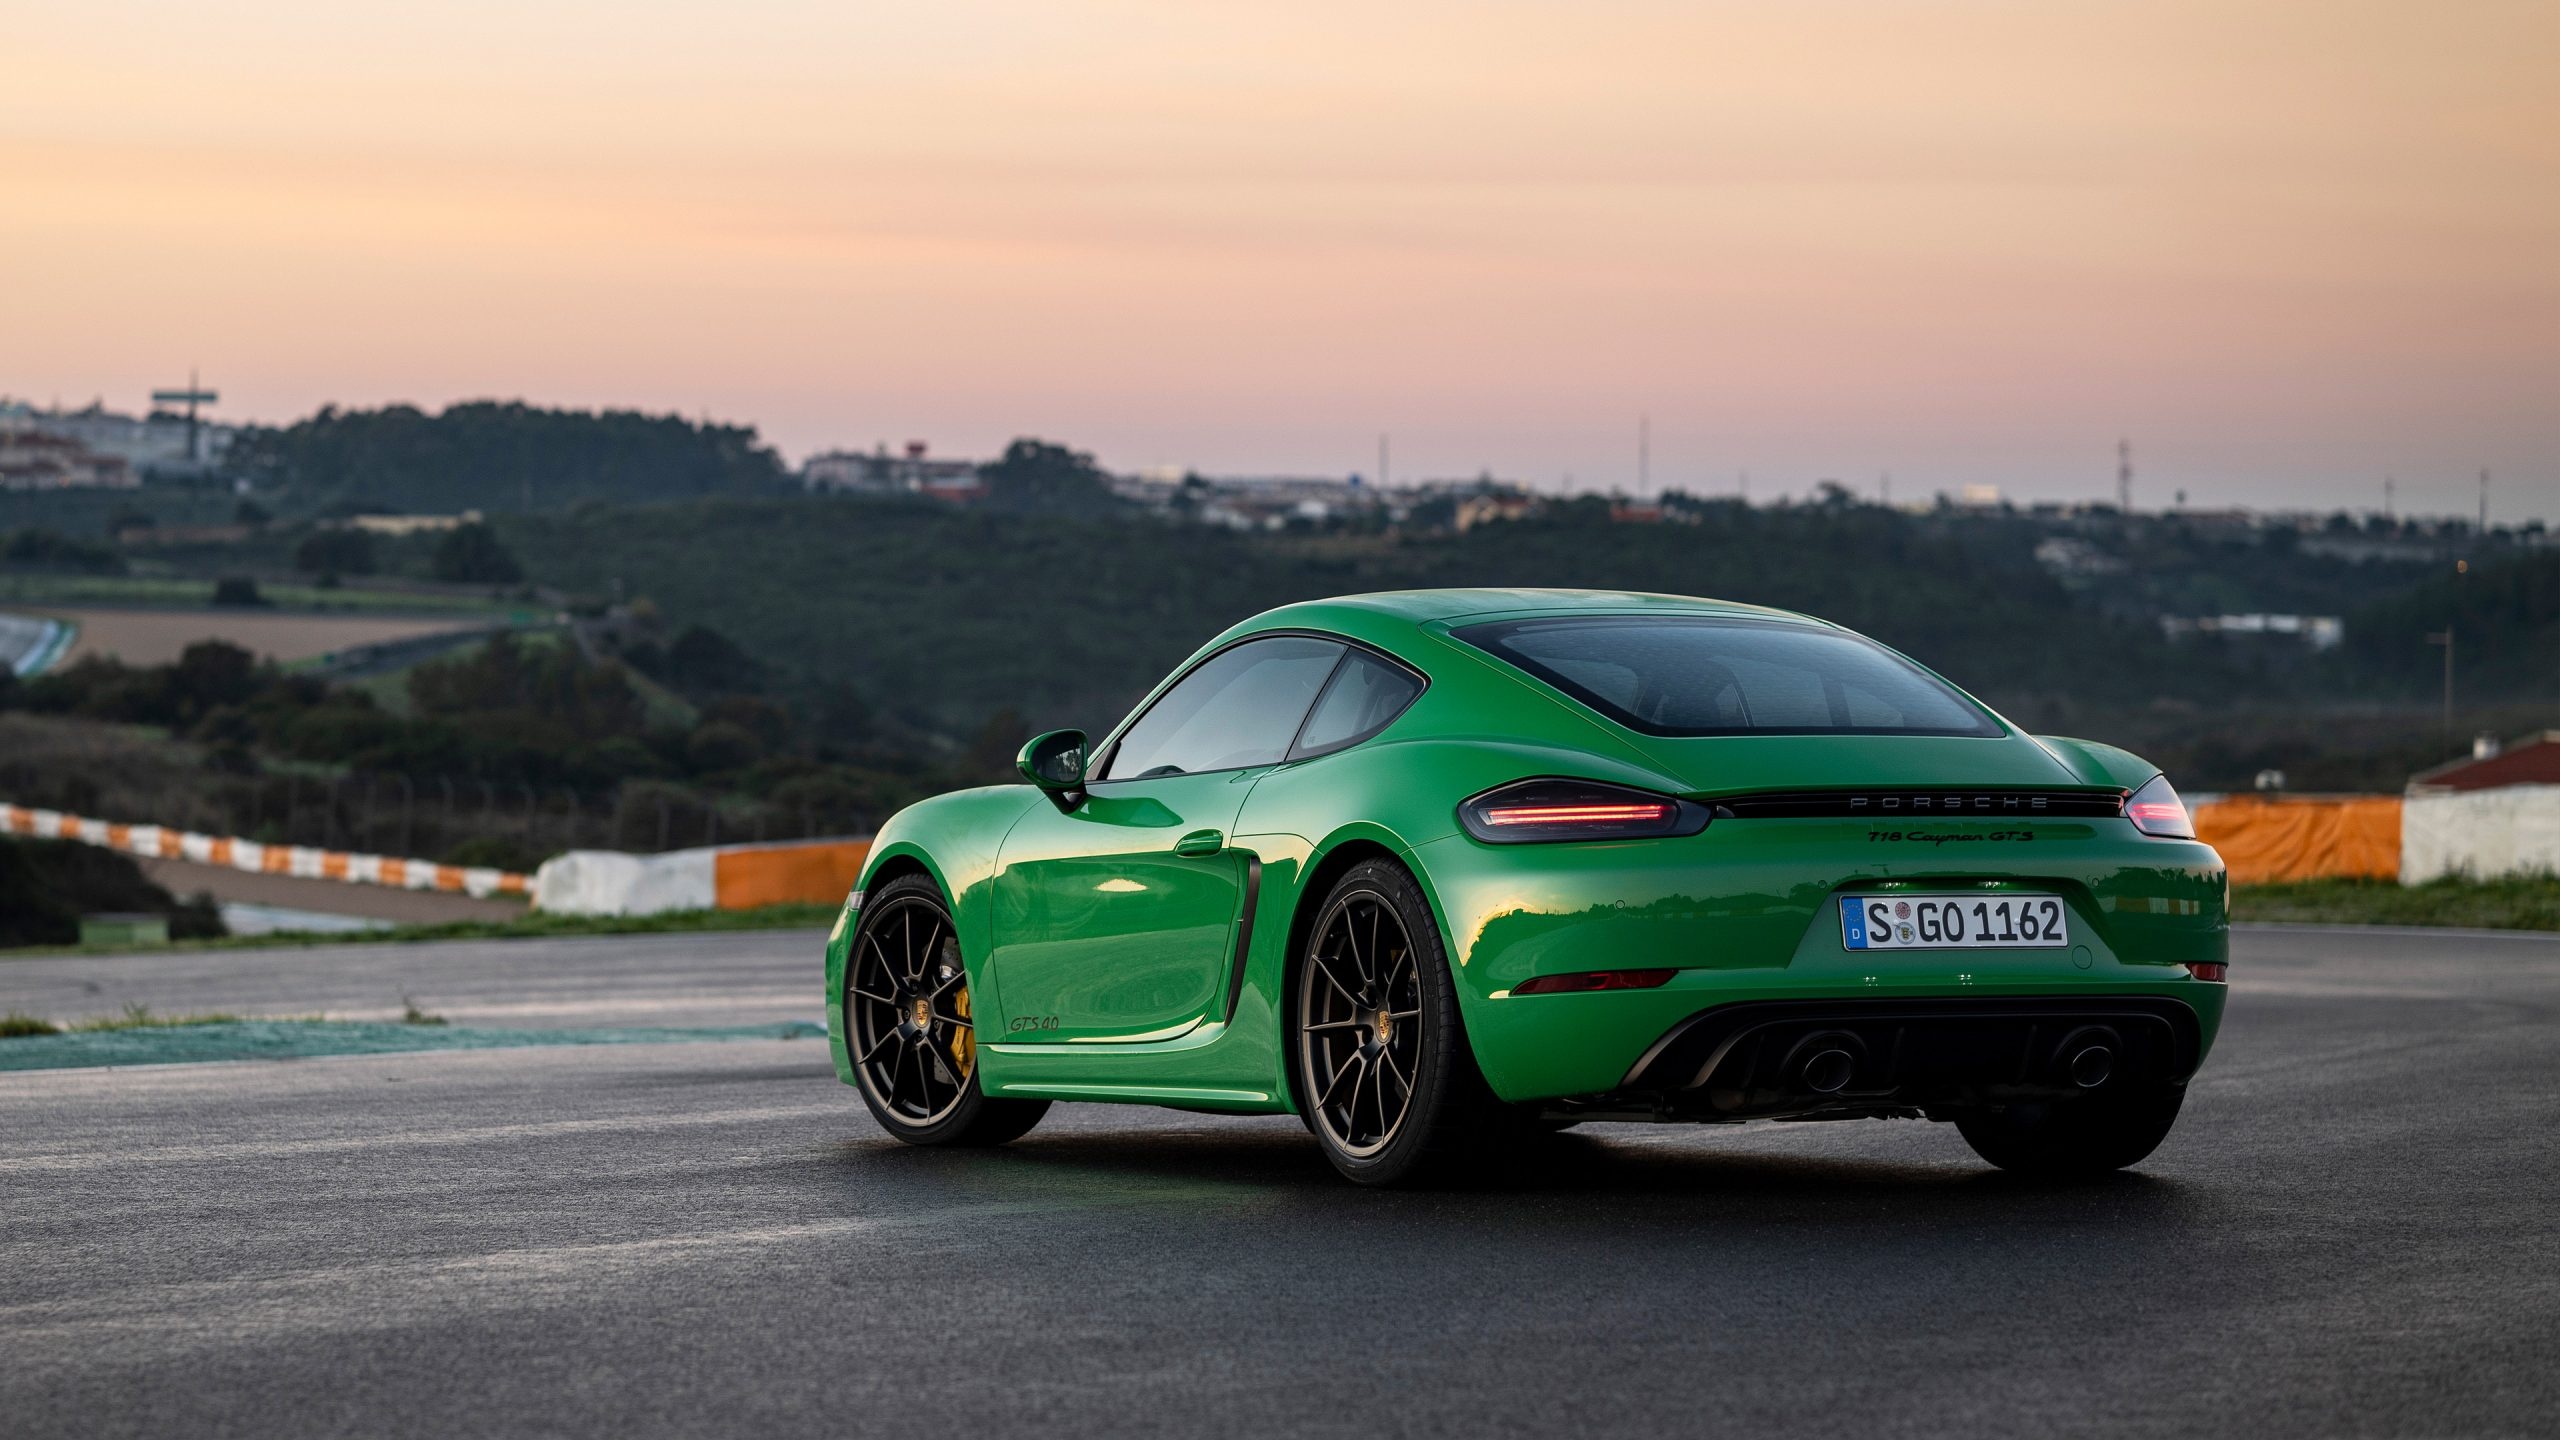 Porsche 718, Cayman GTS, HD wallpapers, Stunning performance, 2560x1440 HD Desktop